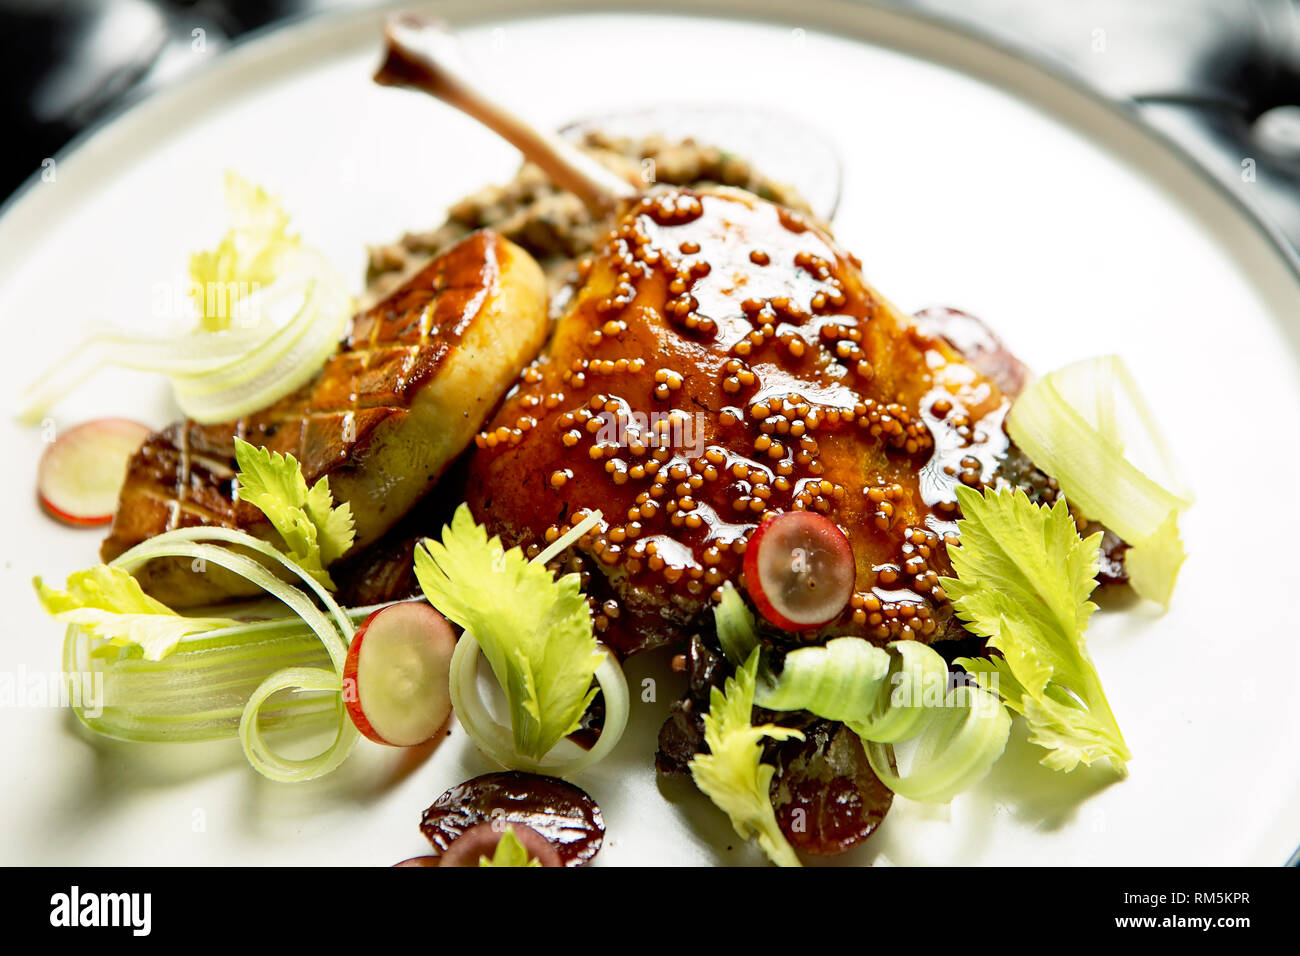 Cuisse de canard juteuse et tendre servie avec une sauce, du foie gras et du céleri Banque D'Images